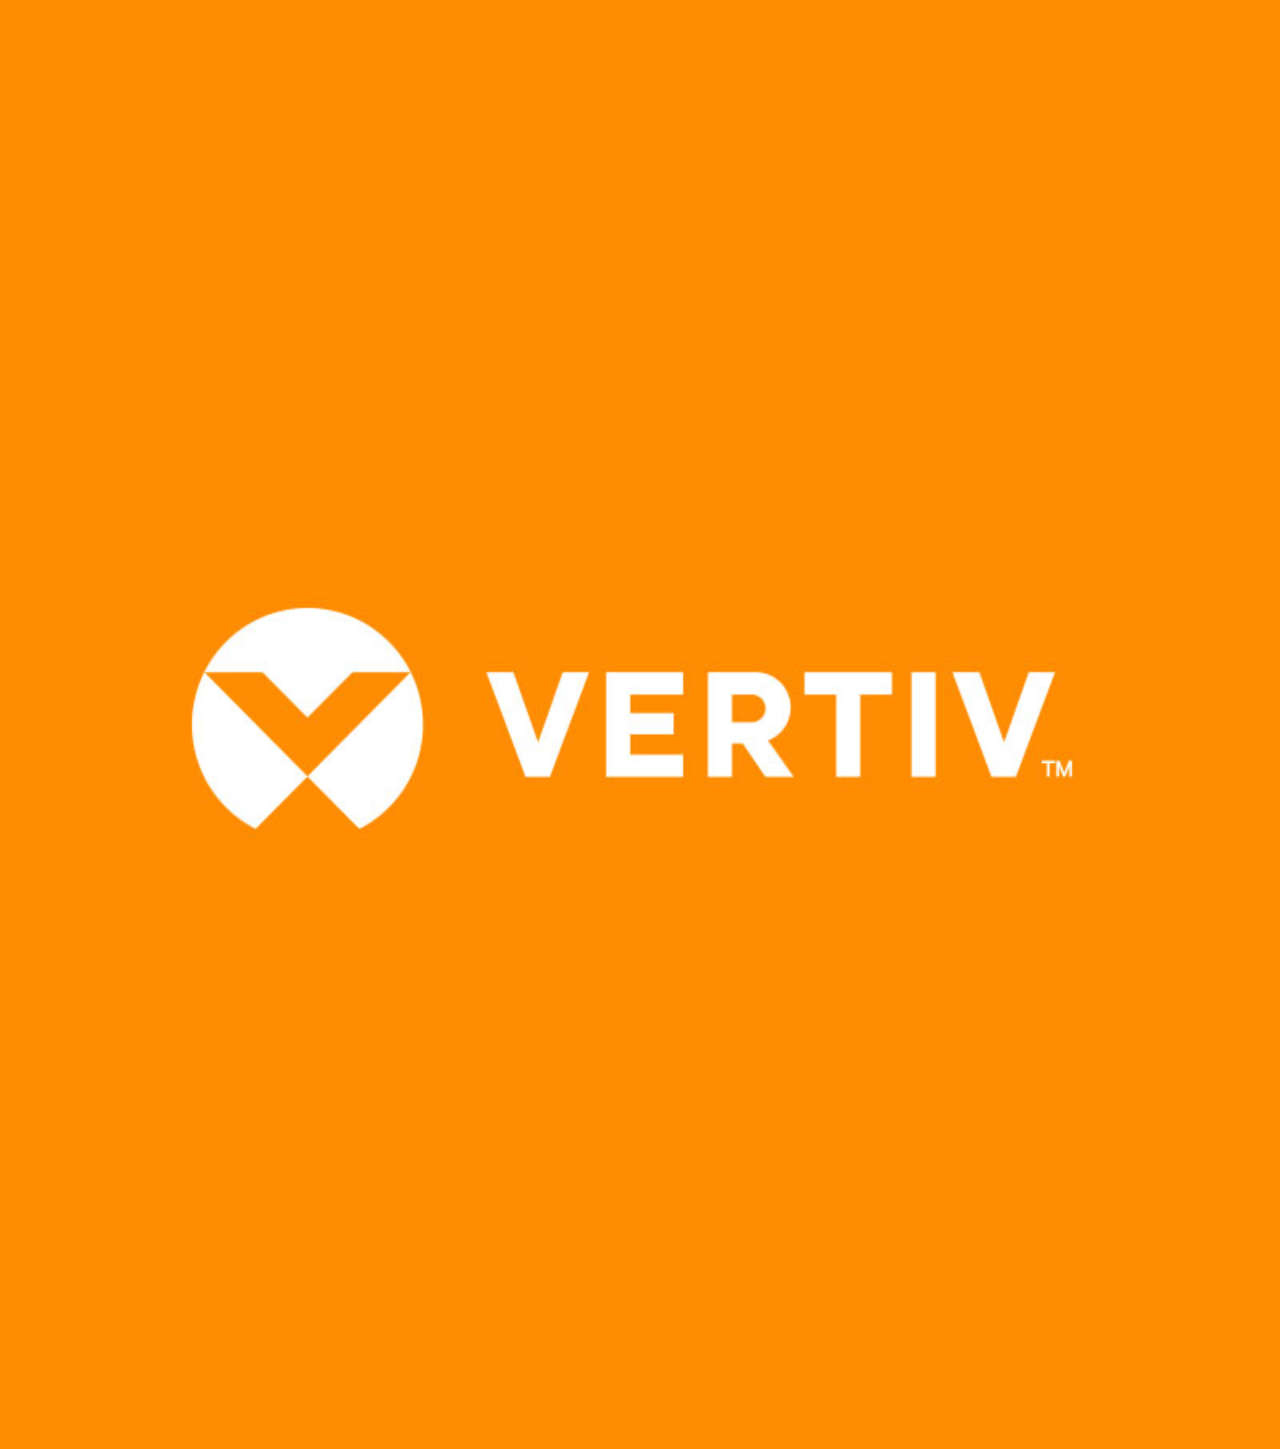 Vertiv_logo-1280x720